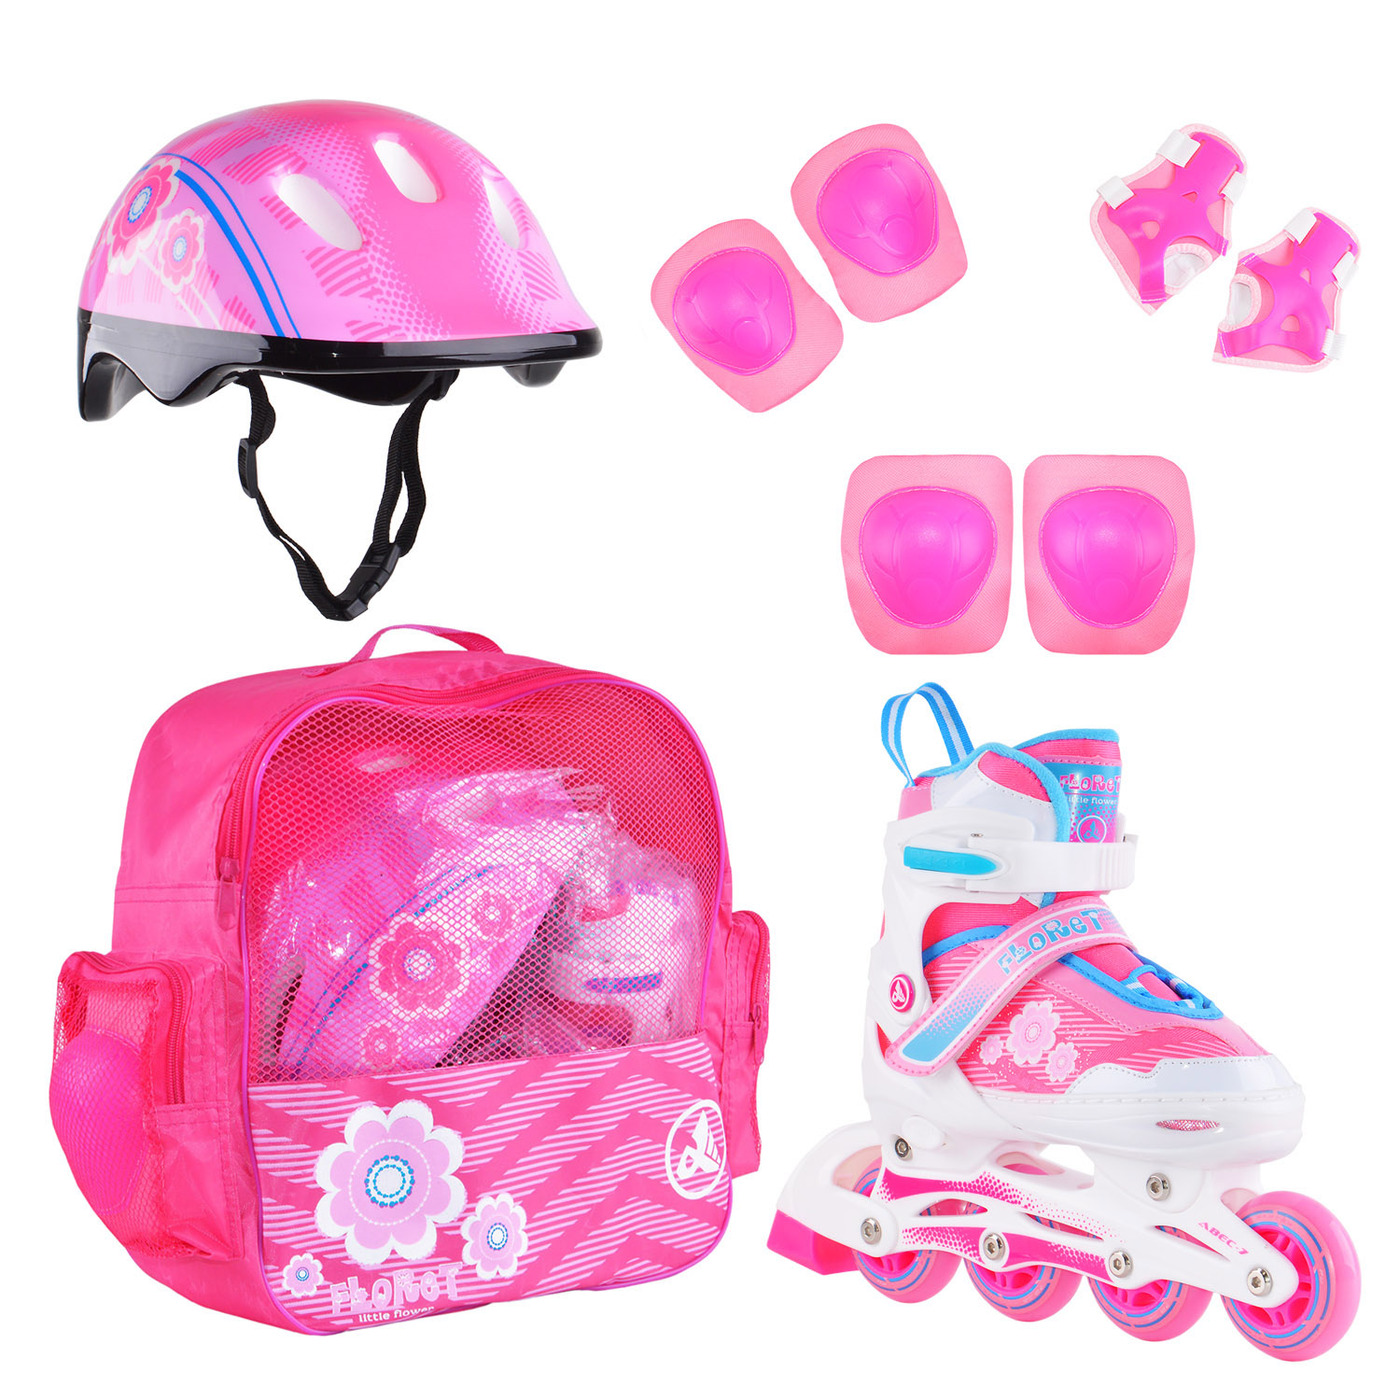 Раздвижные роликовые коньки Alpha Caprice FLORET Wh/Pink/Bl, шлем, защита, сумка M: 35-38 раздвижные роликовые коньки alpha caprice soul pink